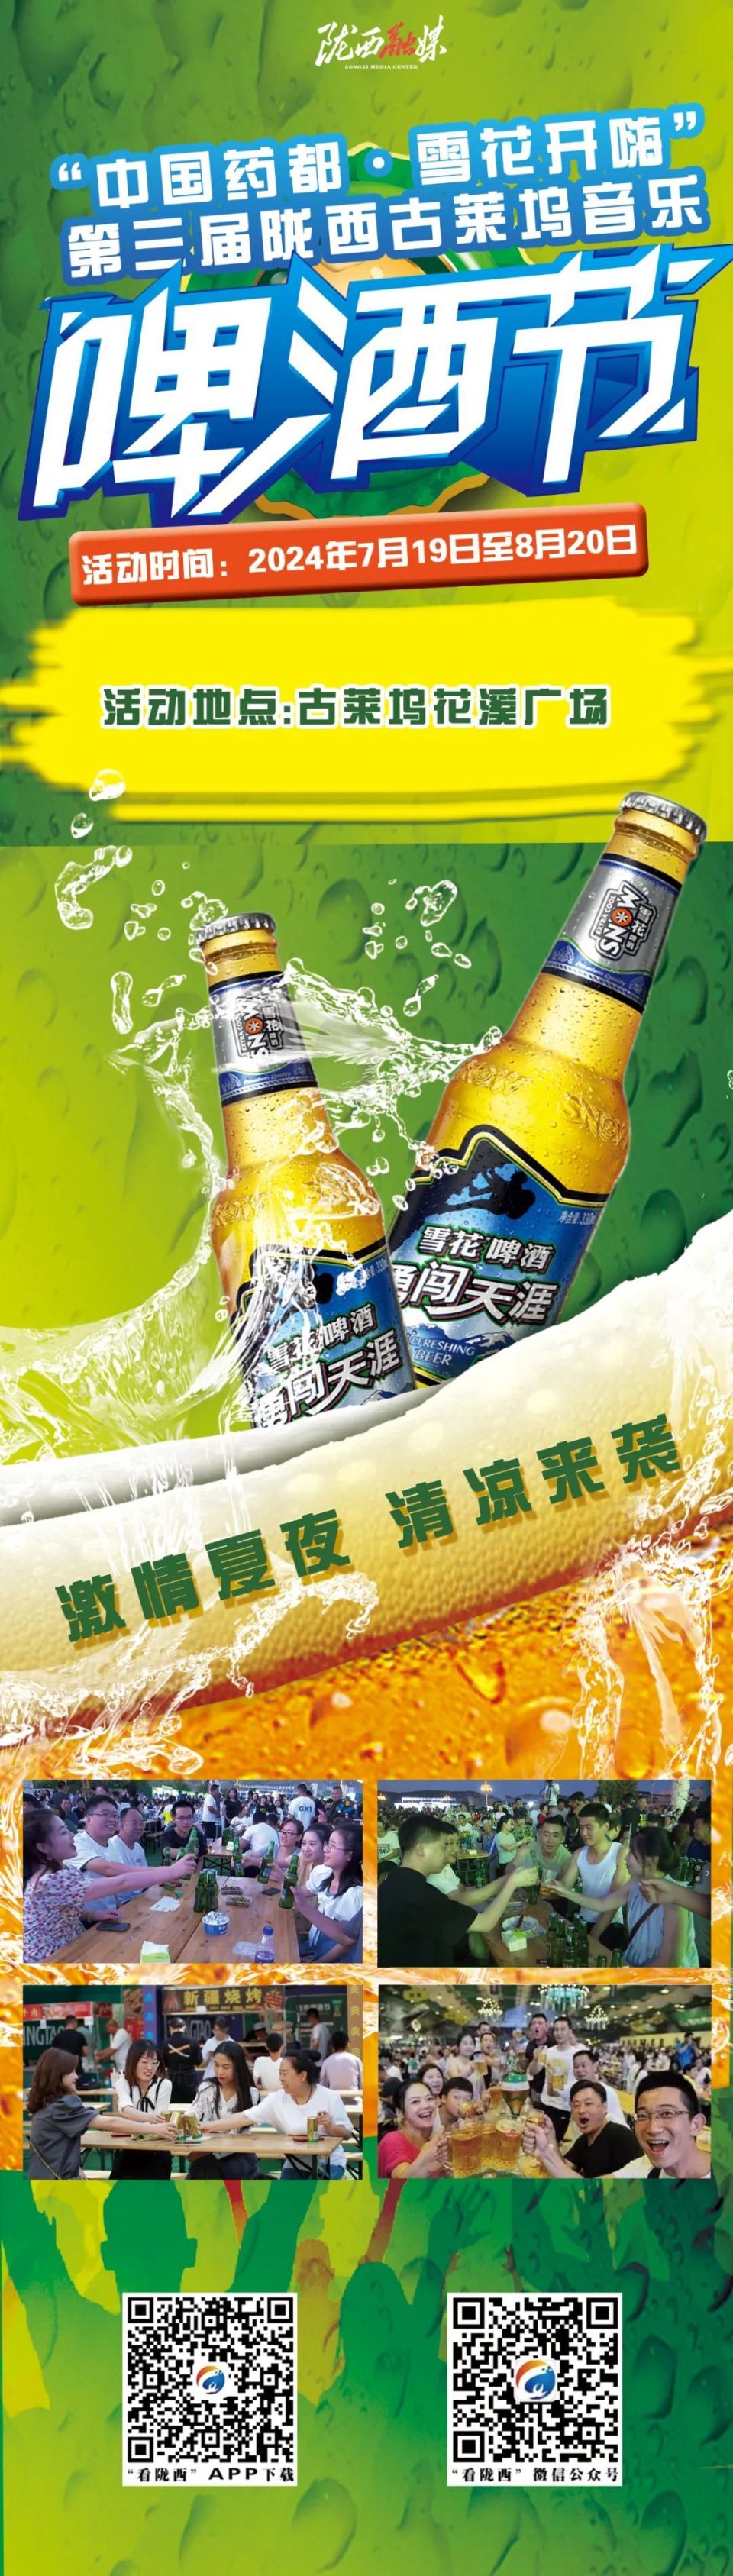 7月19日晚,中国药都·雪花开嗨第三届陇西古莱坞音乐啤酒节将激情盛